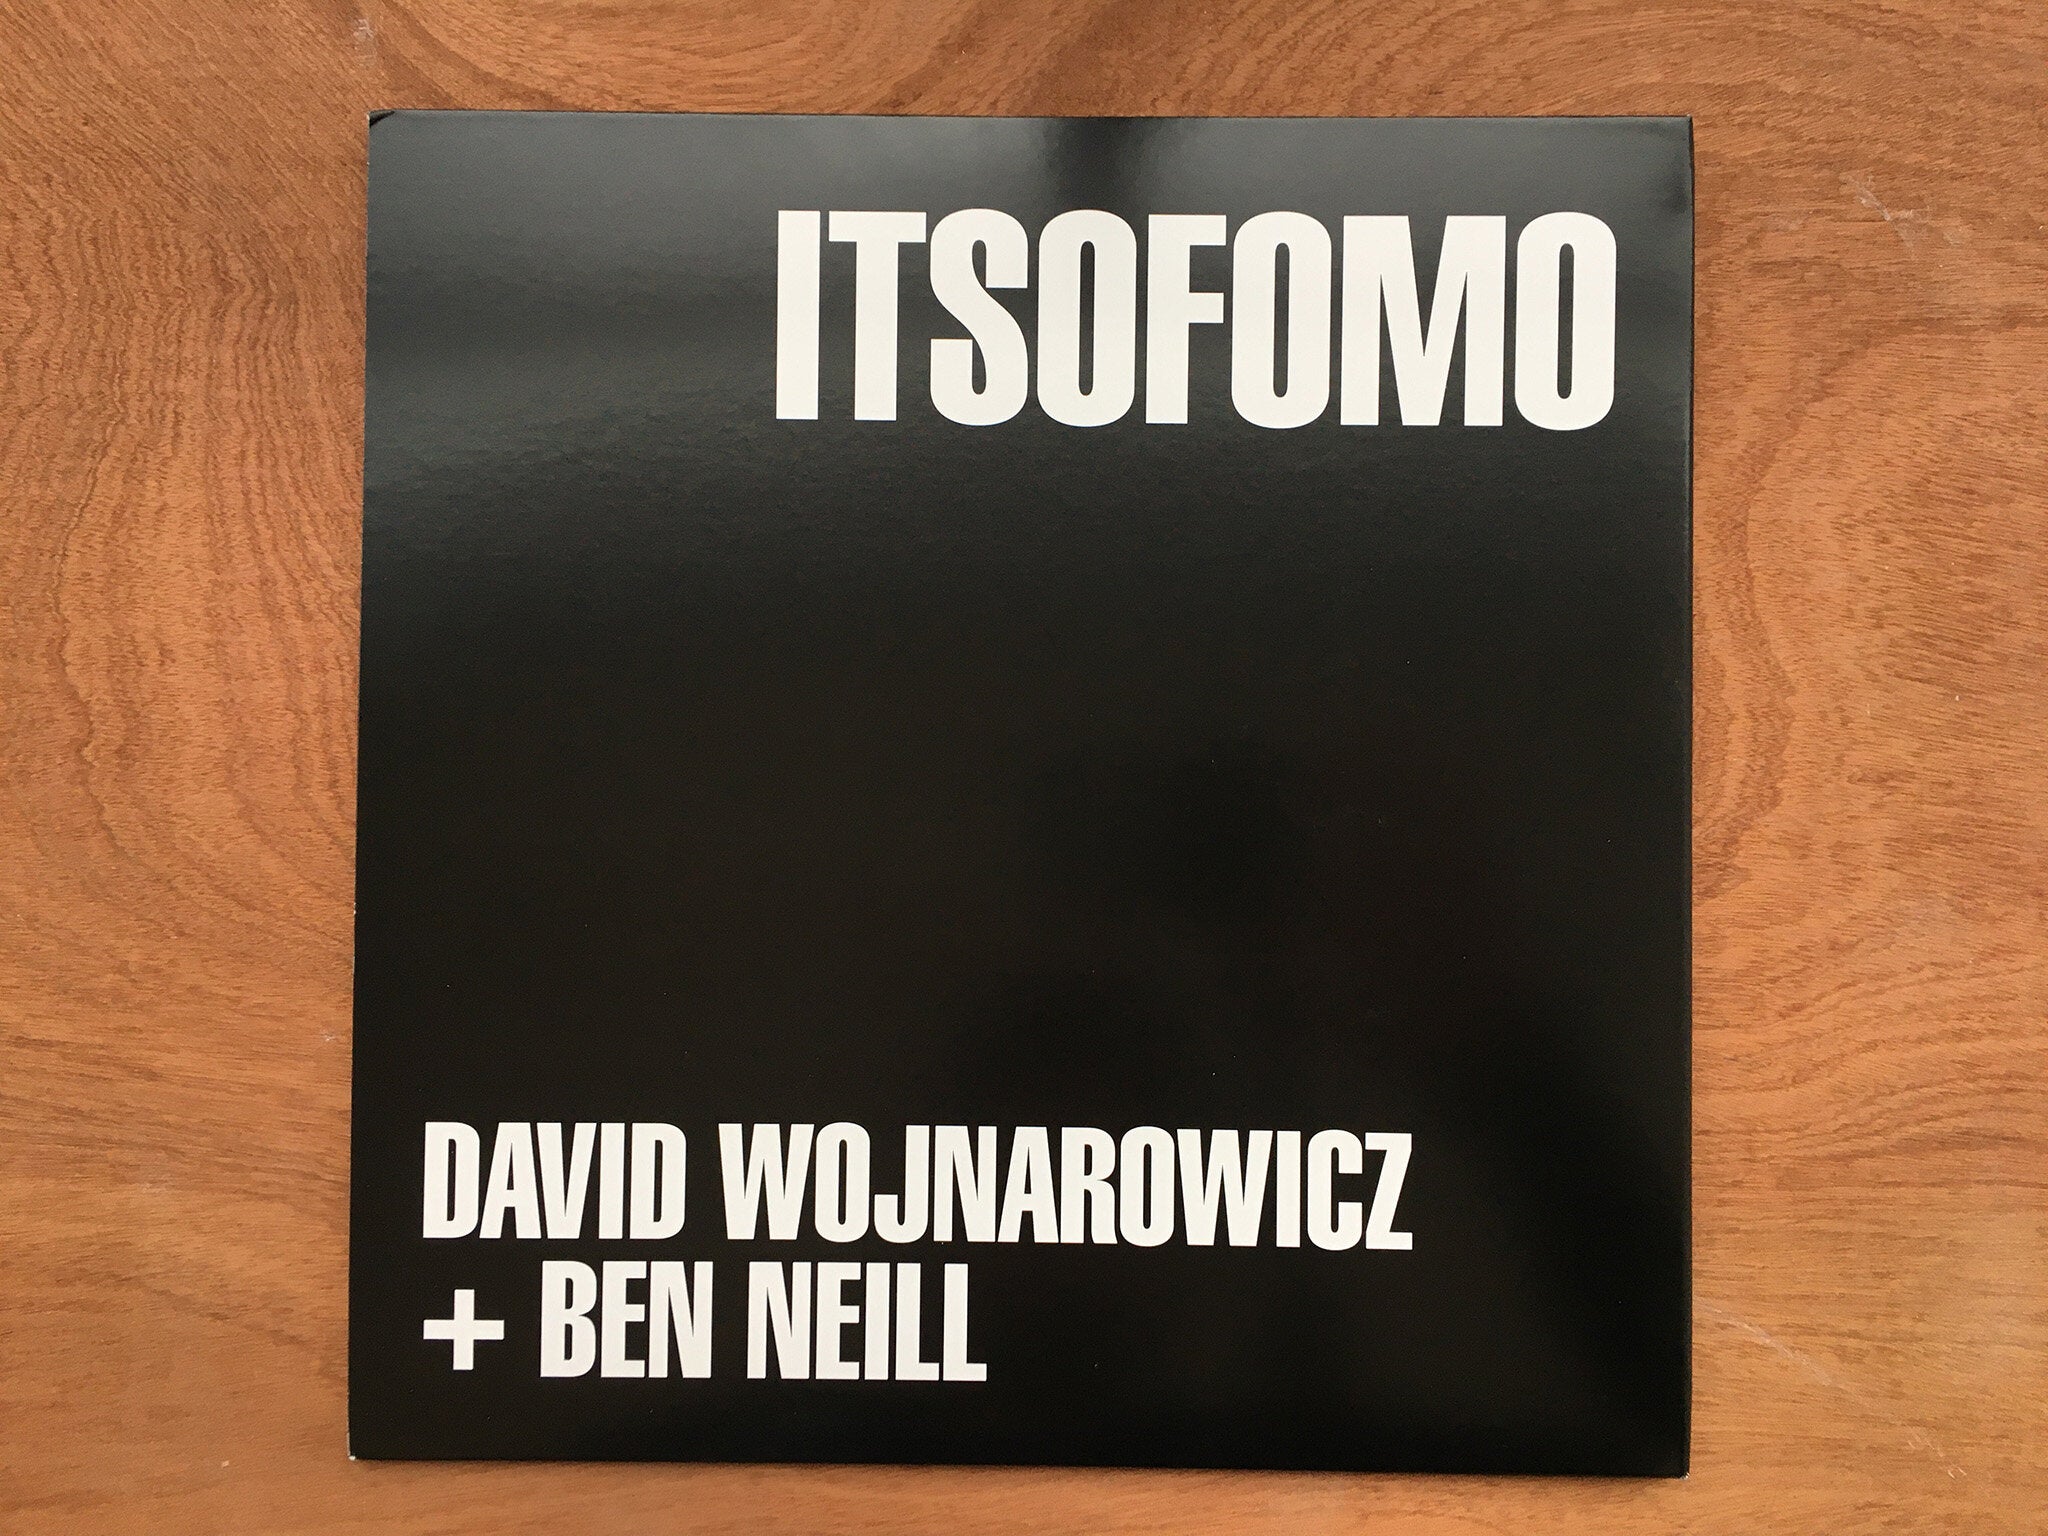 ITSOFOMO 2xLP by David Wojnarowicz and Ben Neill